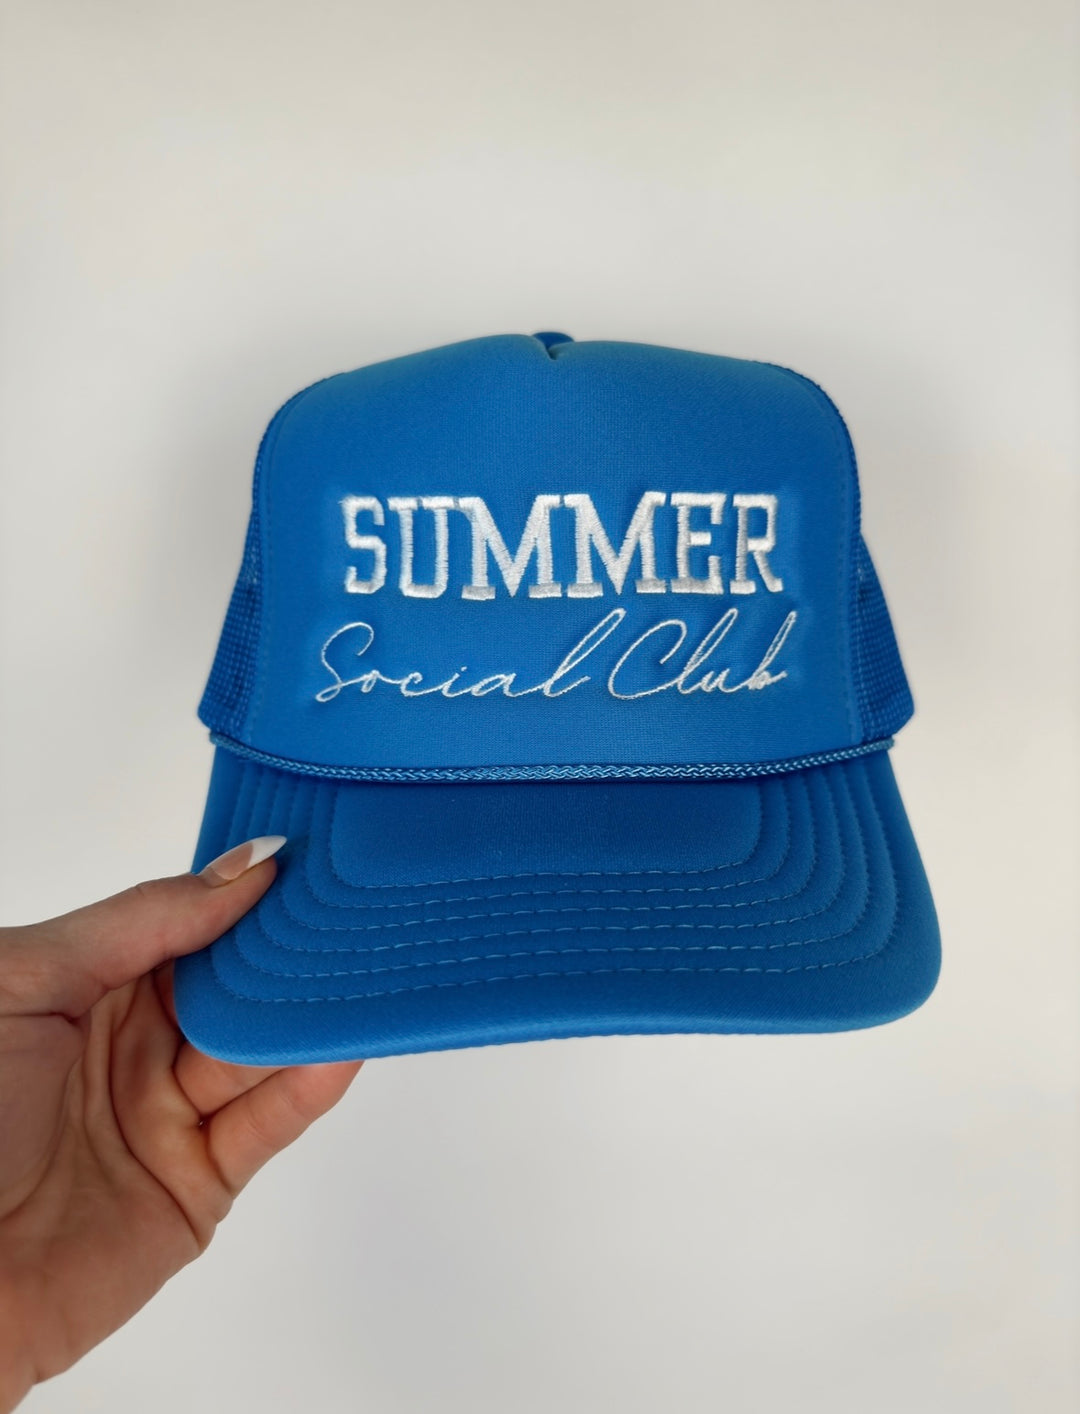 Summer Social Club Trucker Hat - Cobalt Blue